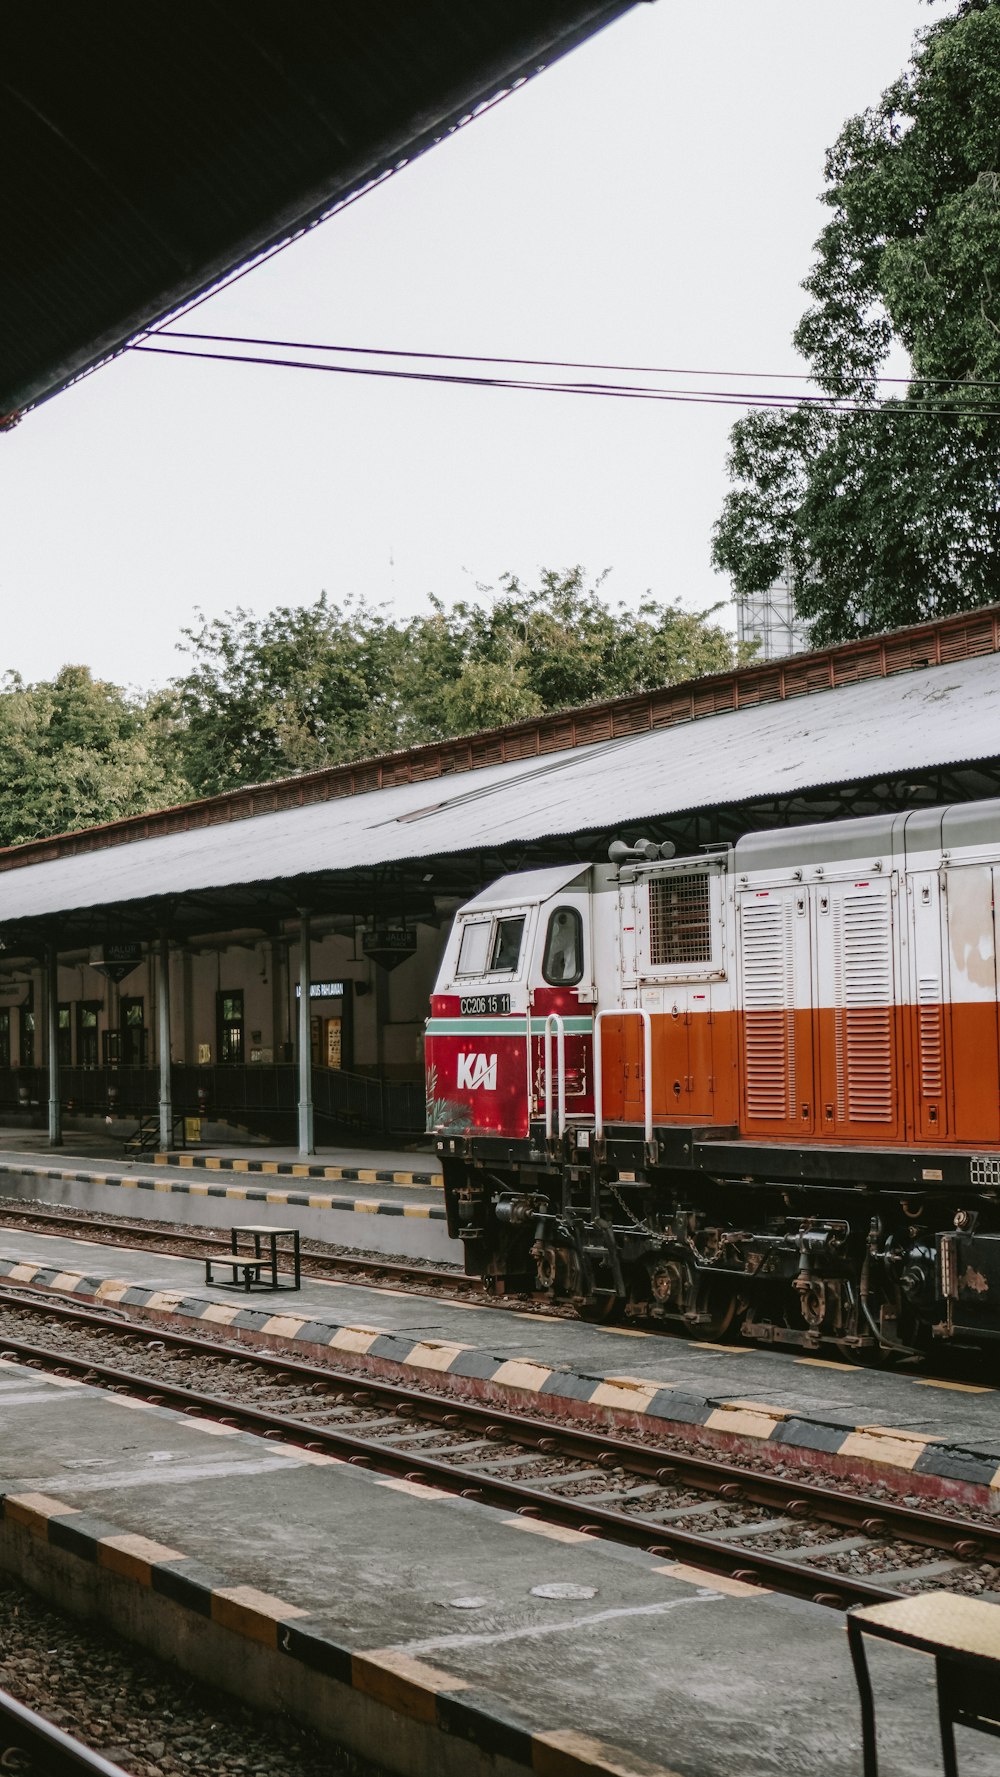 駅に停車する赤と白の列車